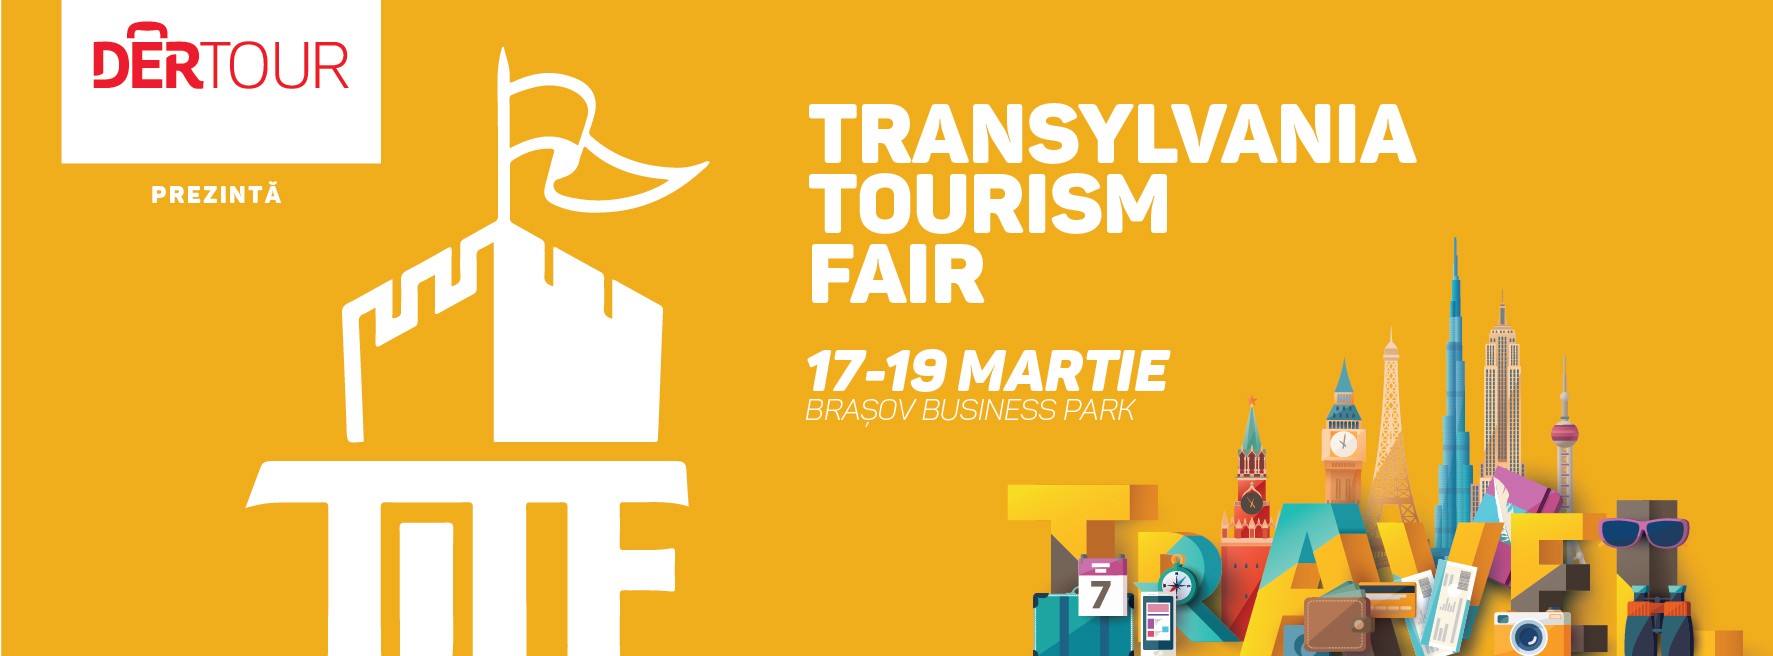 Transylvania Tourism Fair